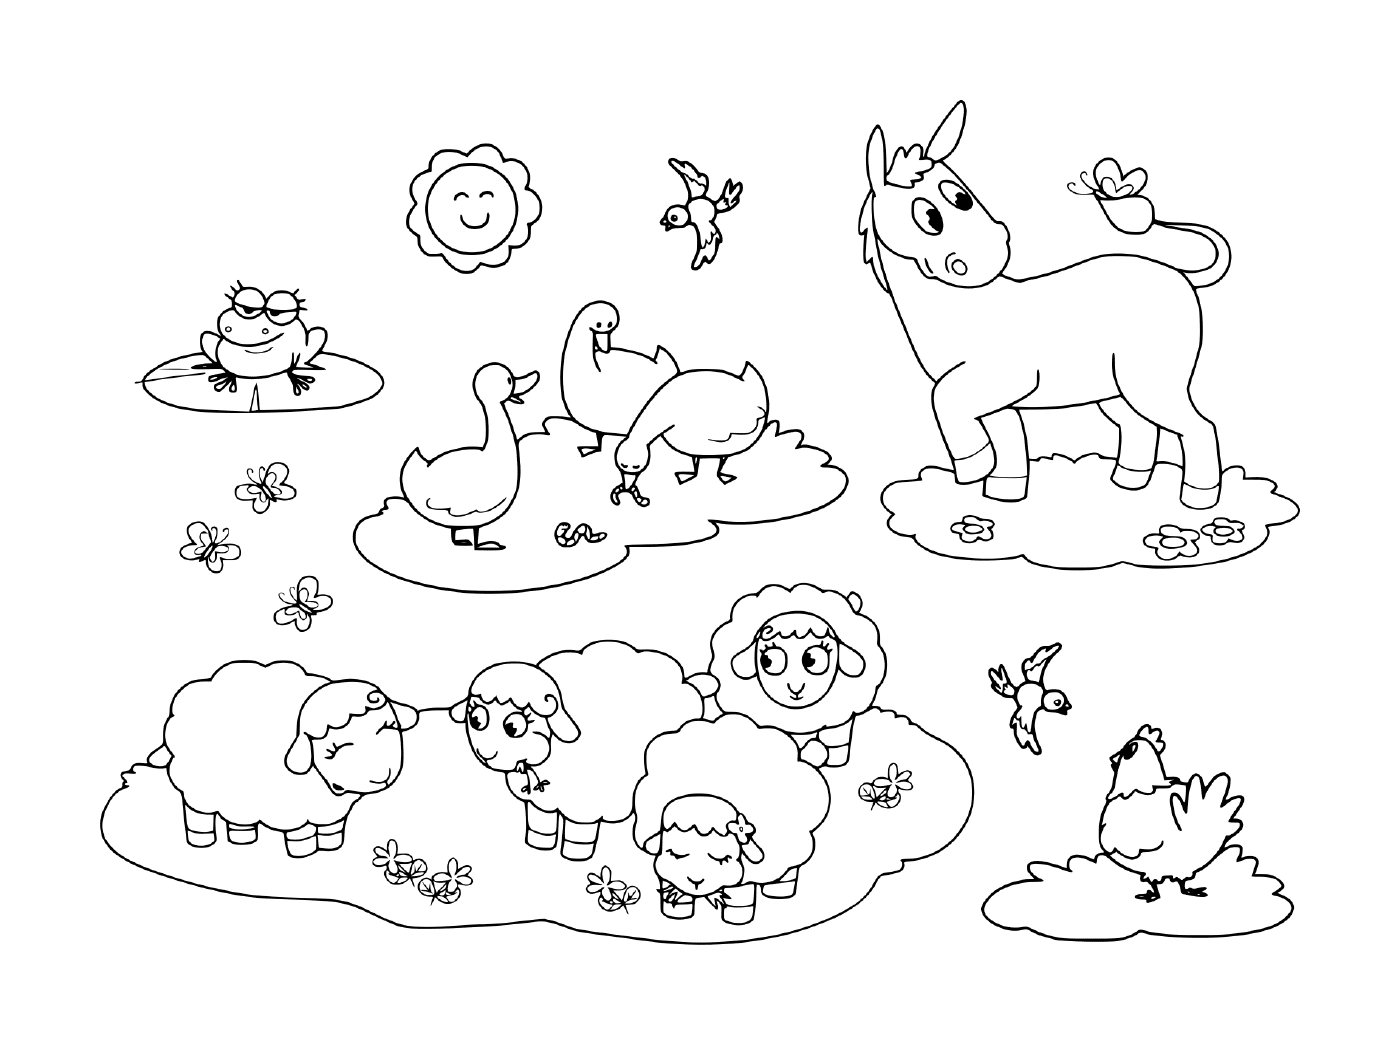  eine Gruppe von Tieren im Gras, darunter ein Esel, eine Gans, eine Henne, Schafe und ein Frosch 